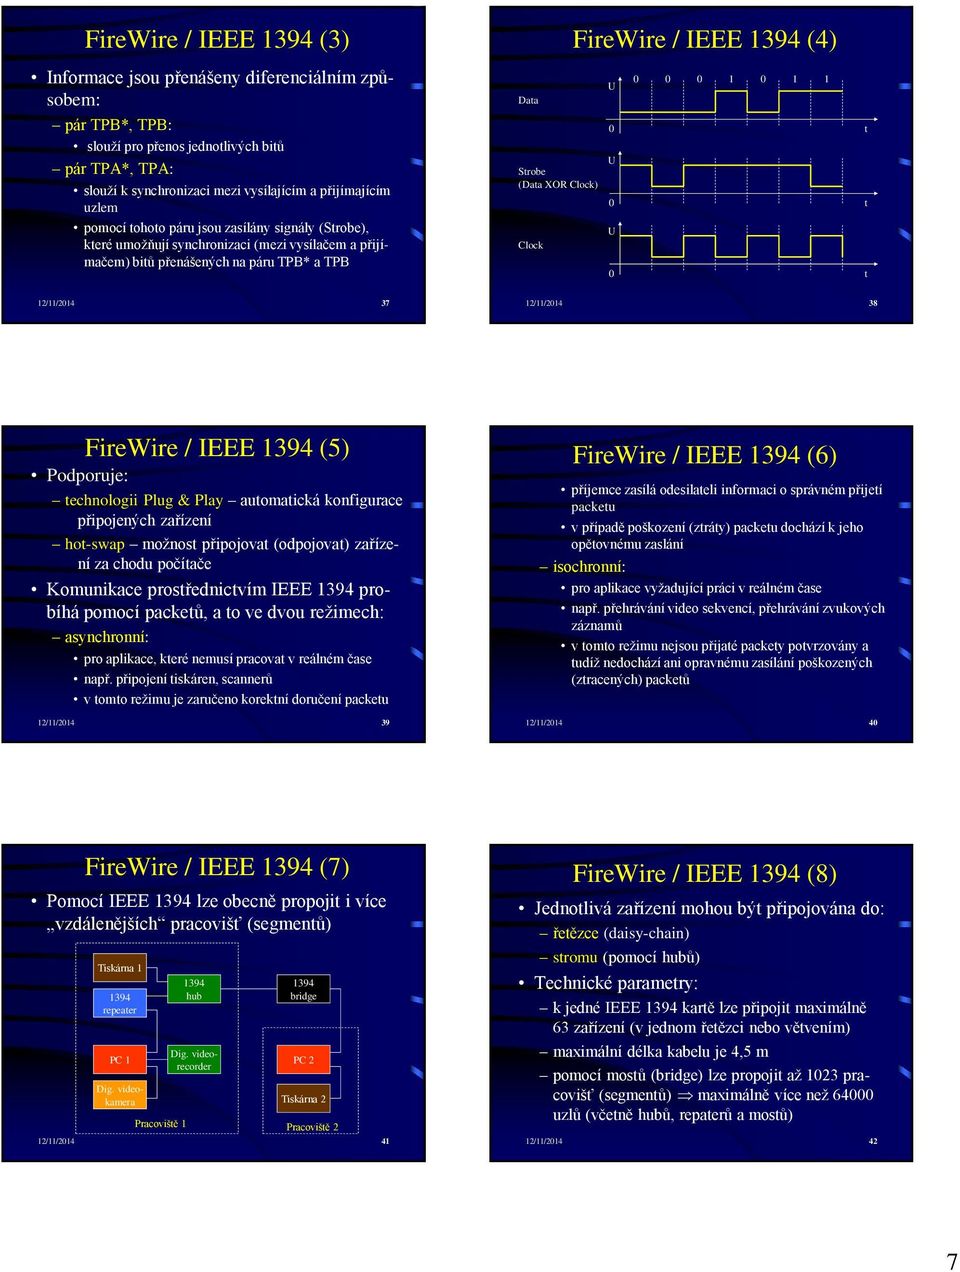 IEEE 1394 (4) U 0 0 0 1 0 1 1 0 t U 0 U 0 t t 12/11/2014 37 12/11/2014 38 FireWire / IEEE 1394 (5) Podporuje: technologii Plug & Play automatická konfigurace připojených zařízení hot-swap možnost